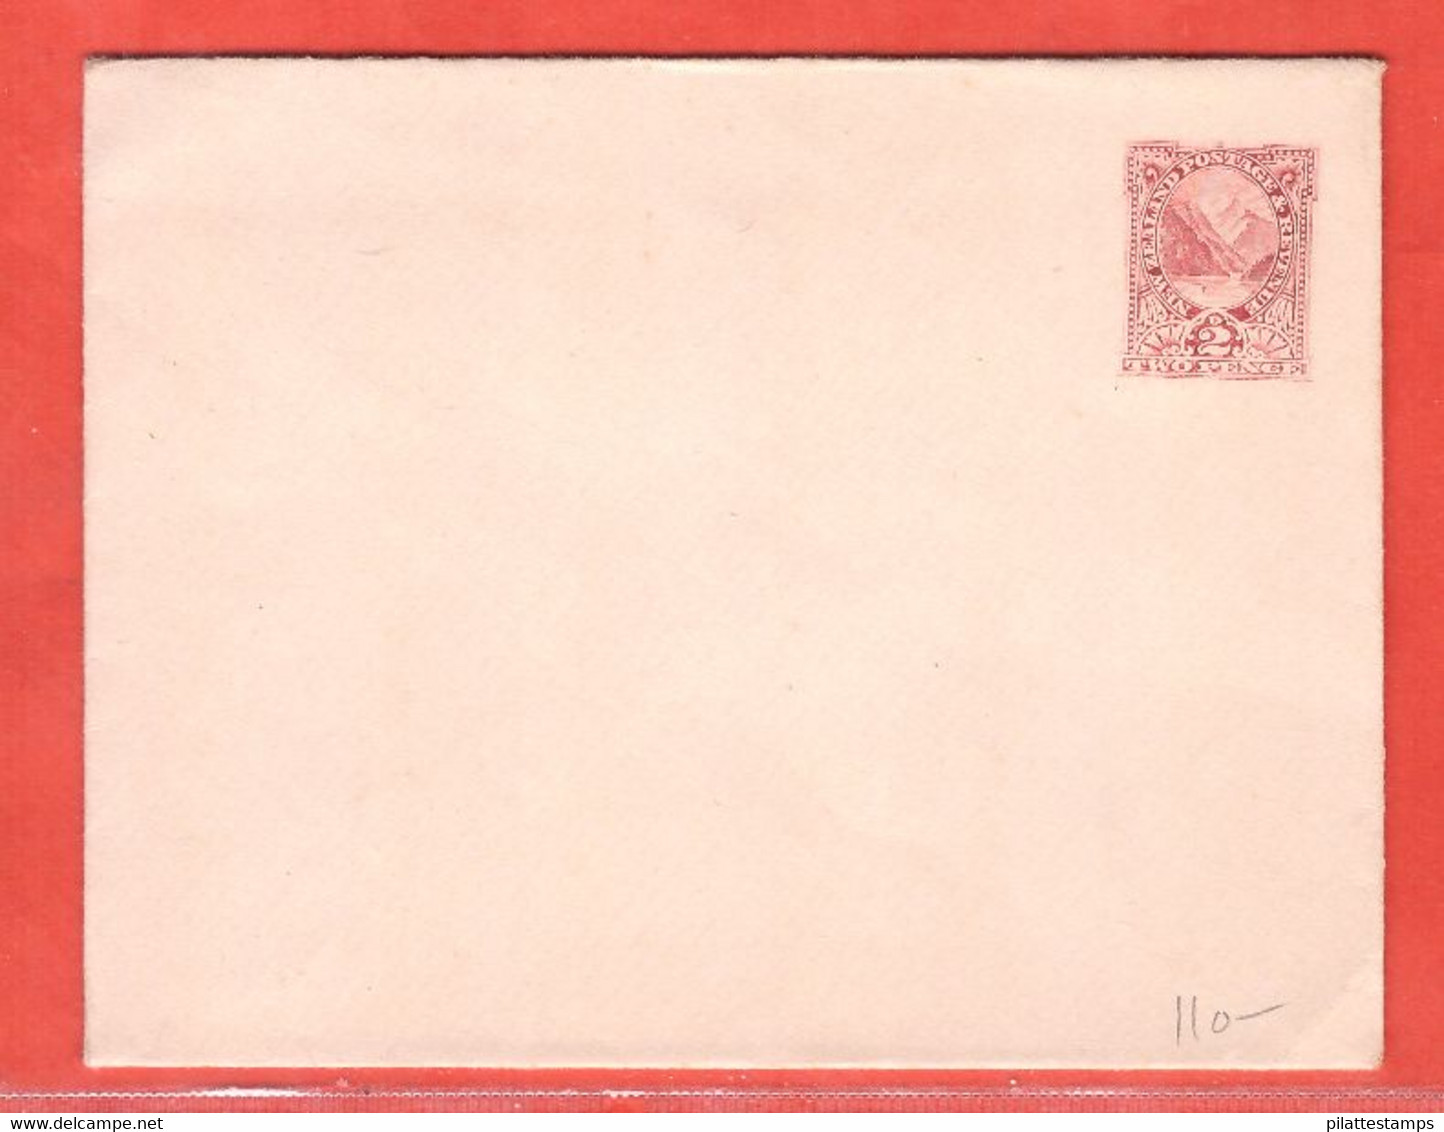 NOUVELLE ZELANDE ENTIER POSTAL 2 PENCES NEUF - Postal Stationery